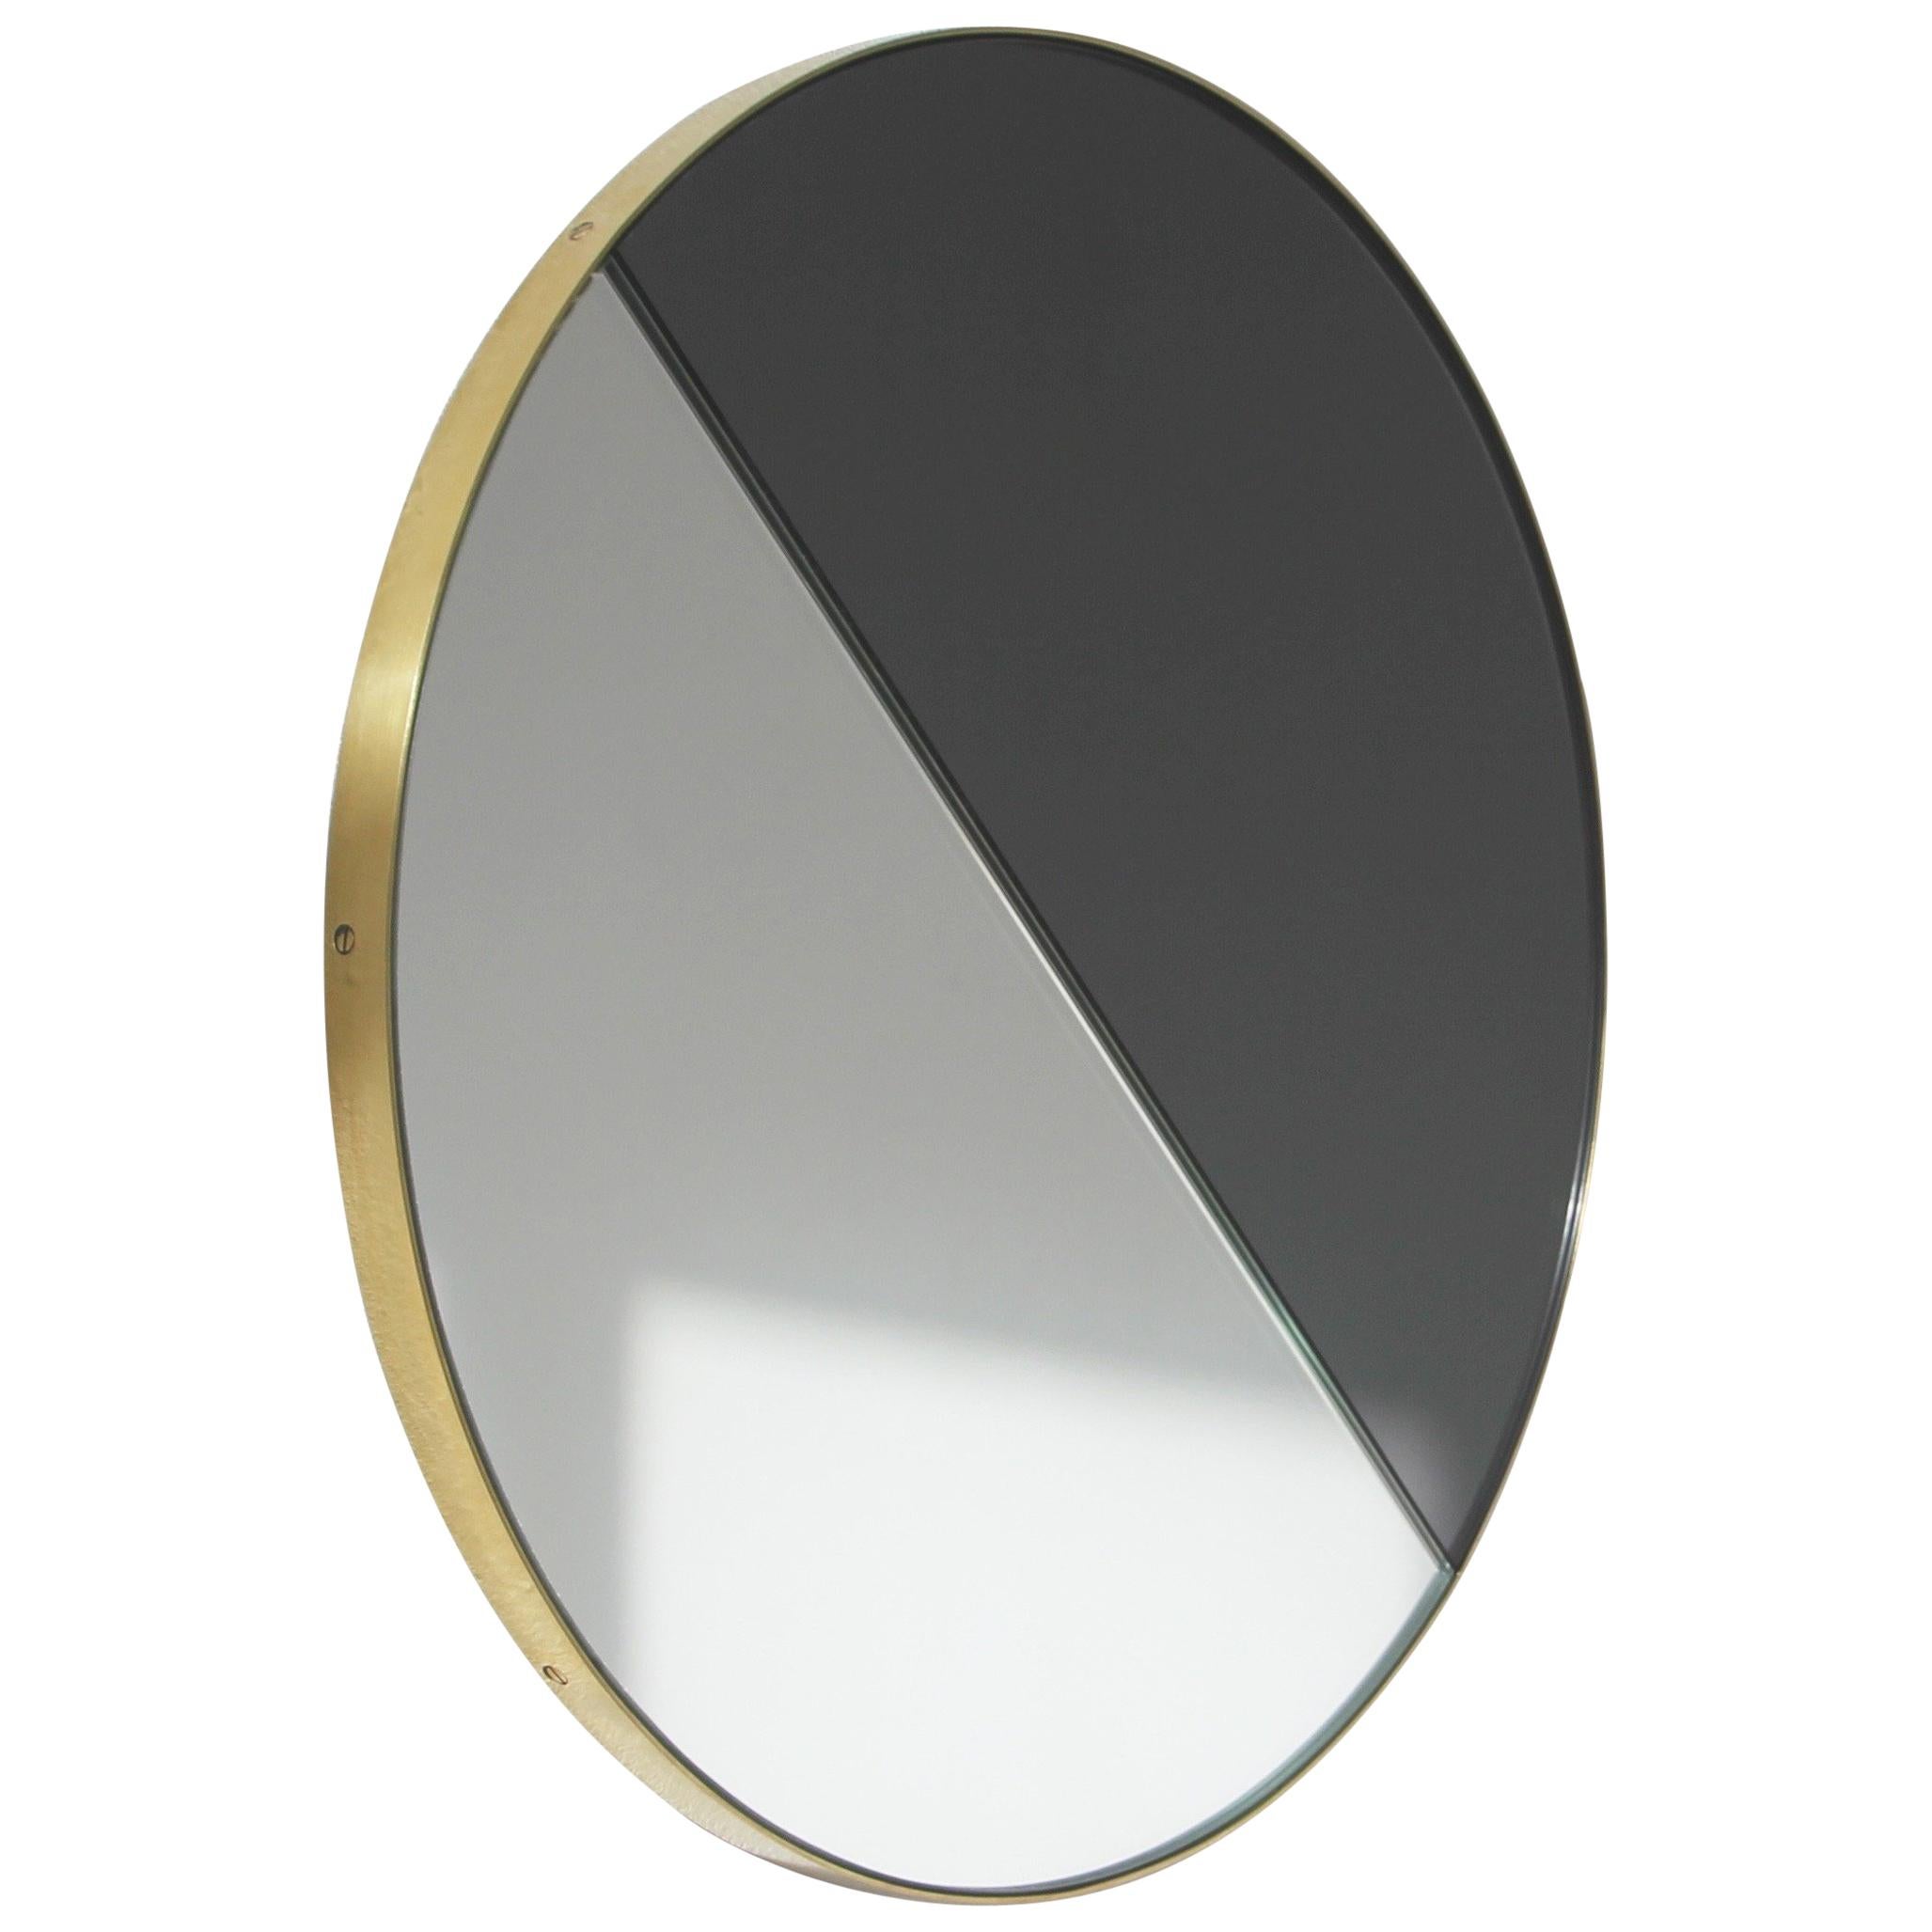 Orbis Dualis Miroir rond contemporain à teinte mixte avec cadre en laiton, large